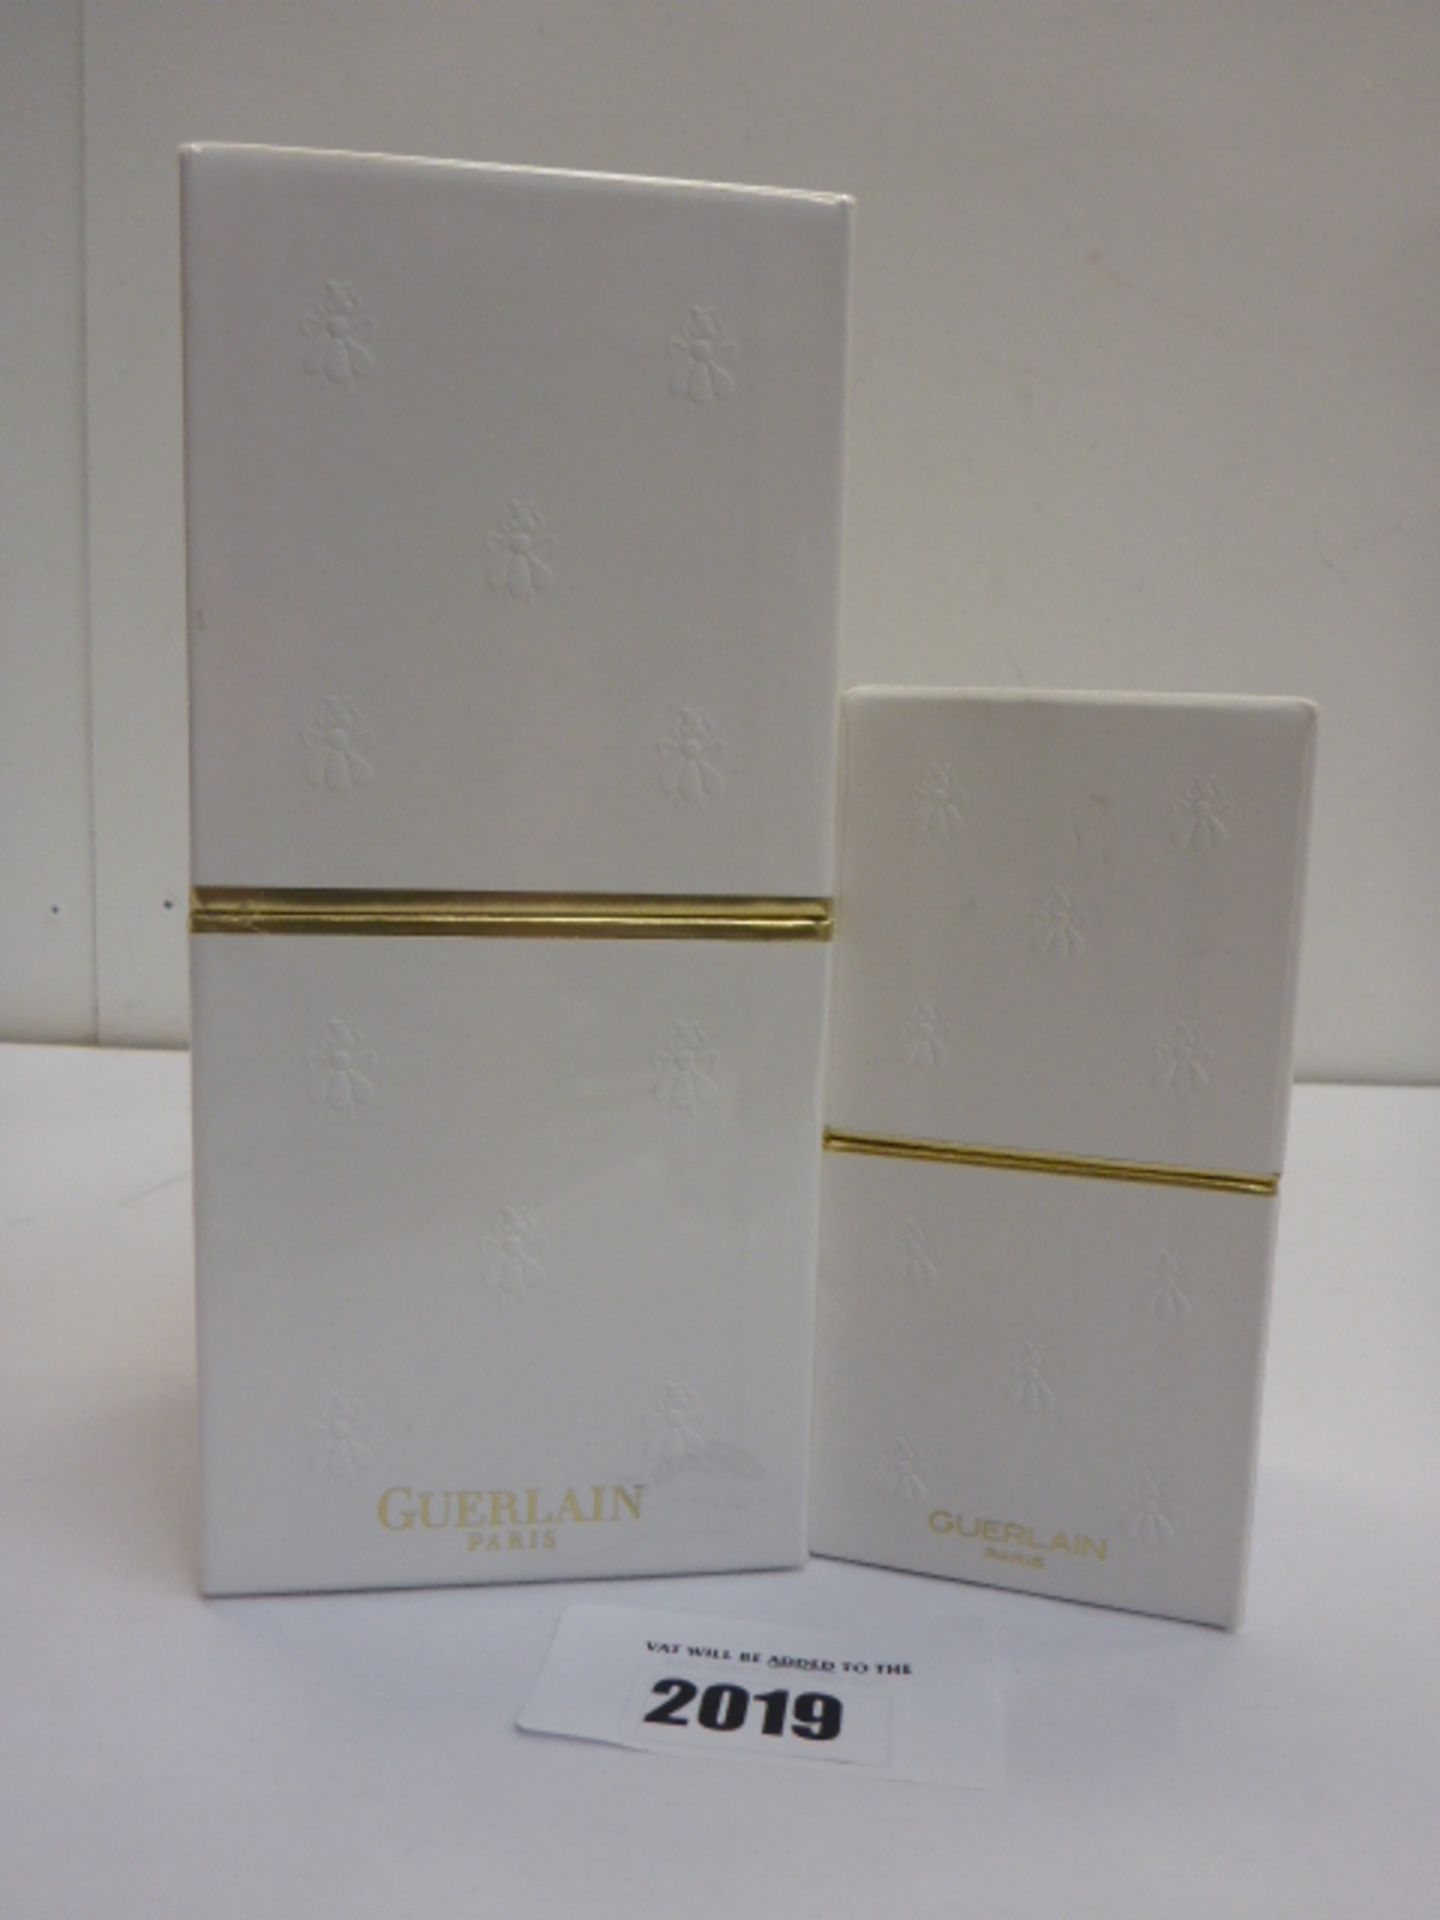 2 Guerlain Paris perfumes (500ml and 125ml)